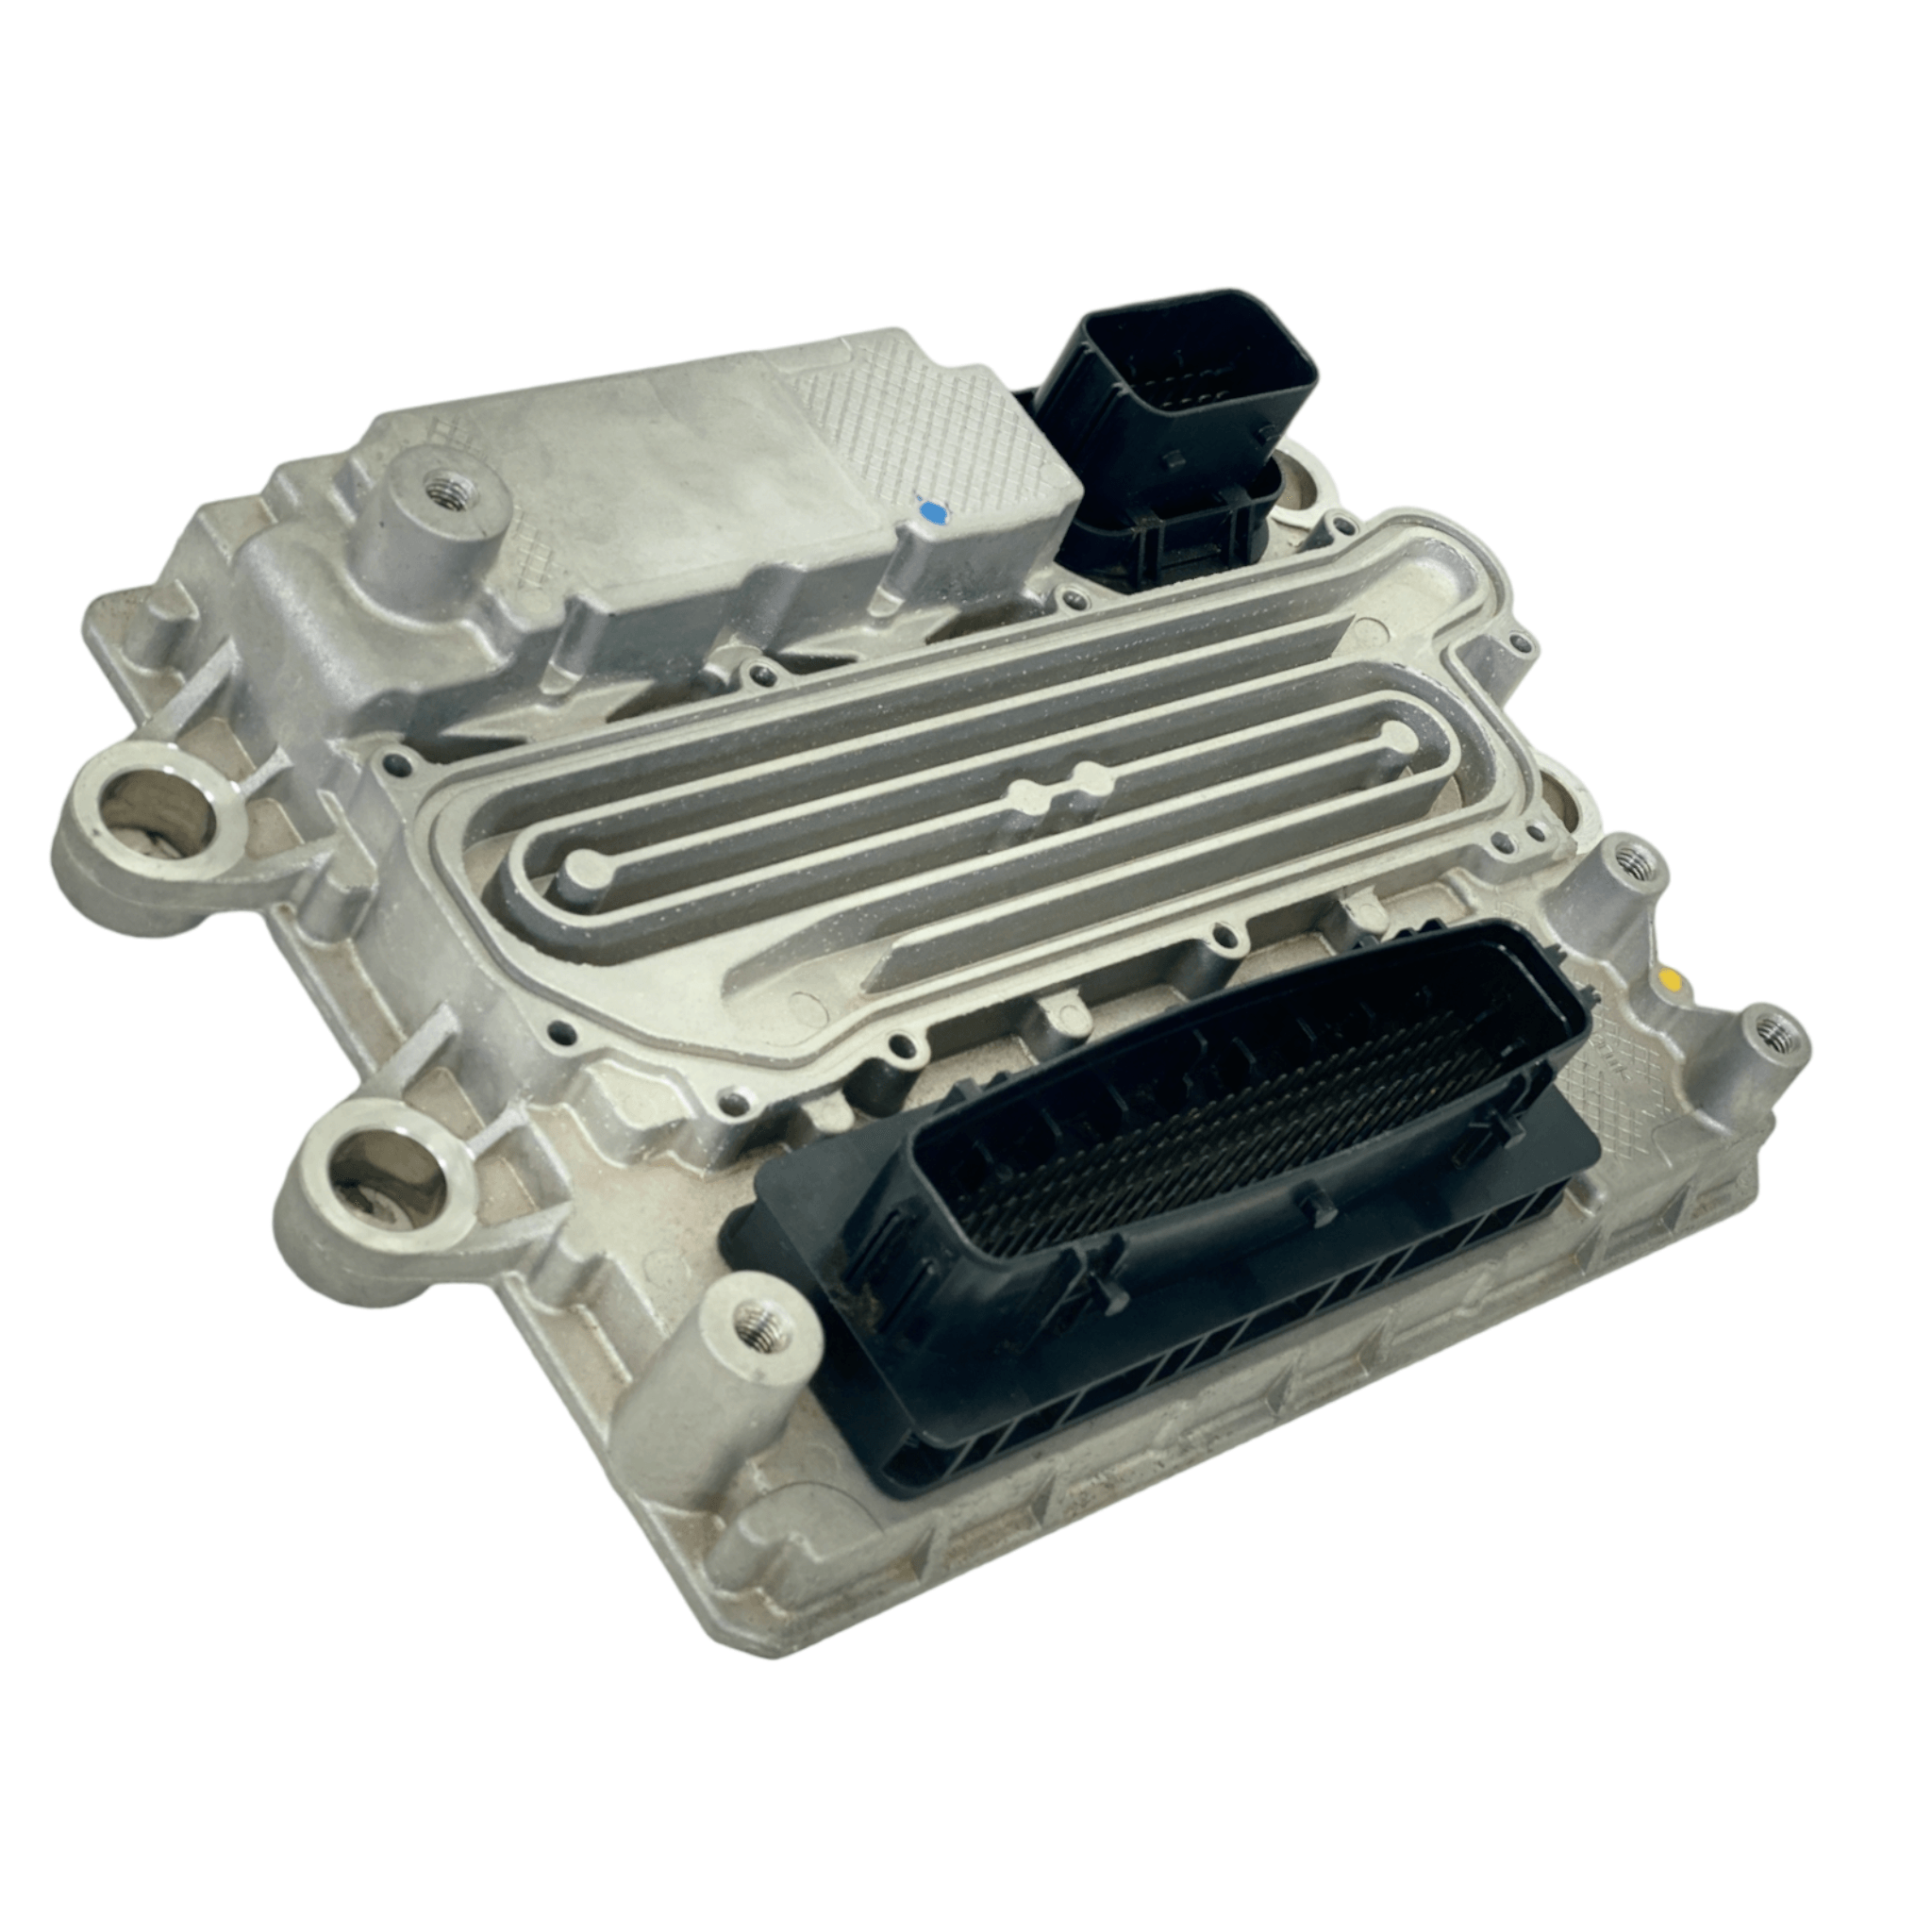 A0004466035 Genuine Detroit Diesel Ecm Engine Control Module - ADVANCED TRUCK PARTS